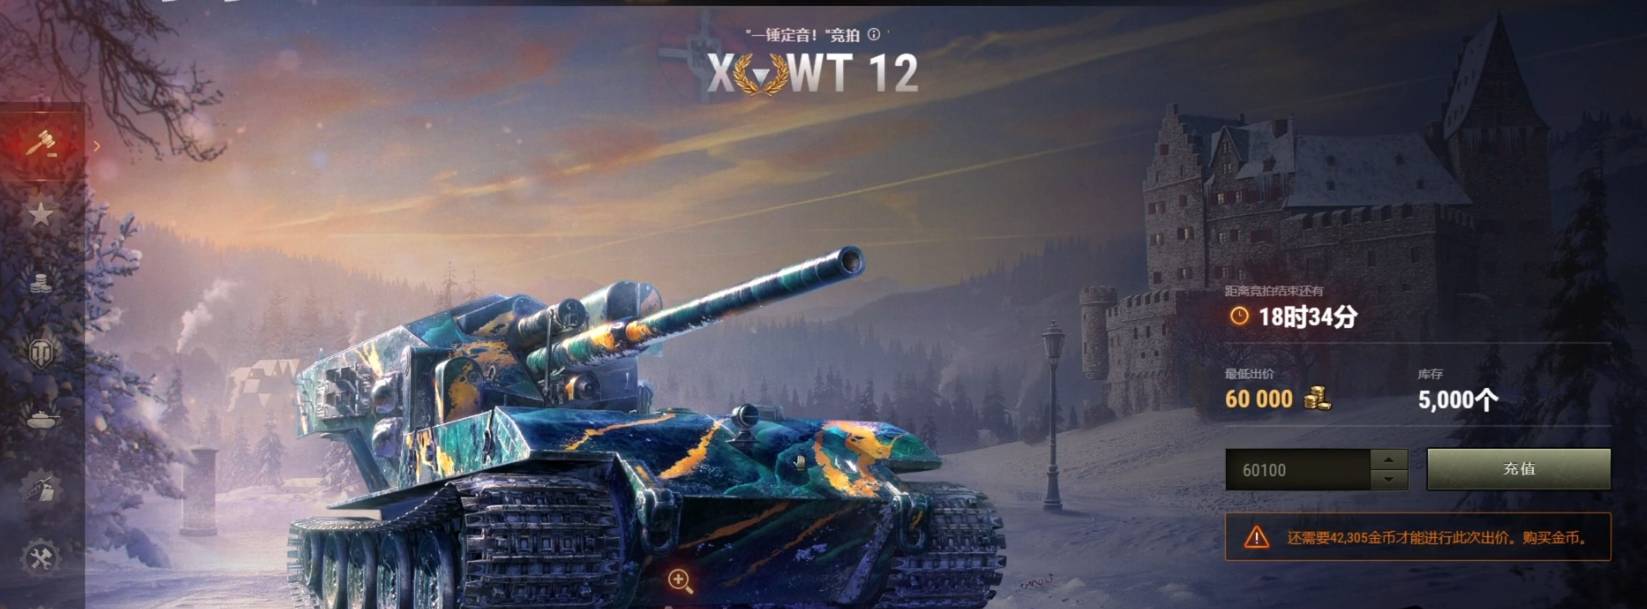 坦克世界wt100百运怎么获得?坦克世界wt100百运获得攻略截图